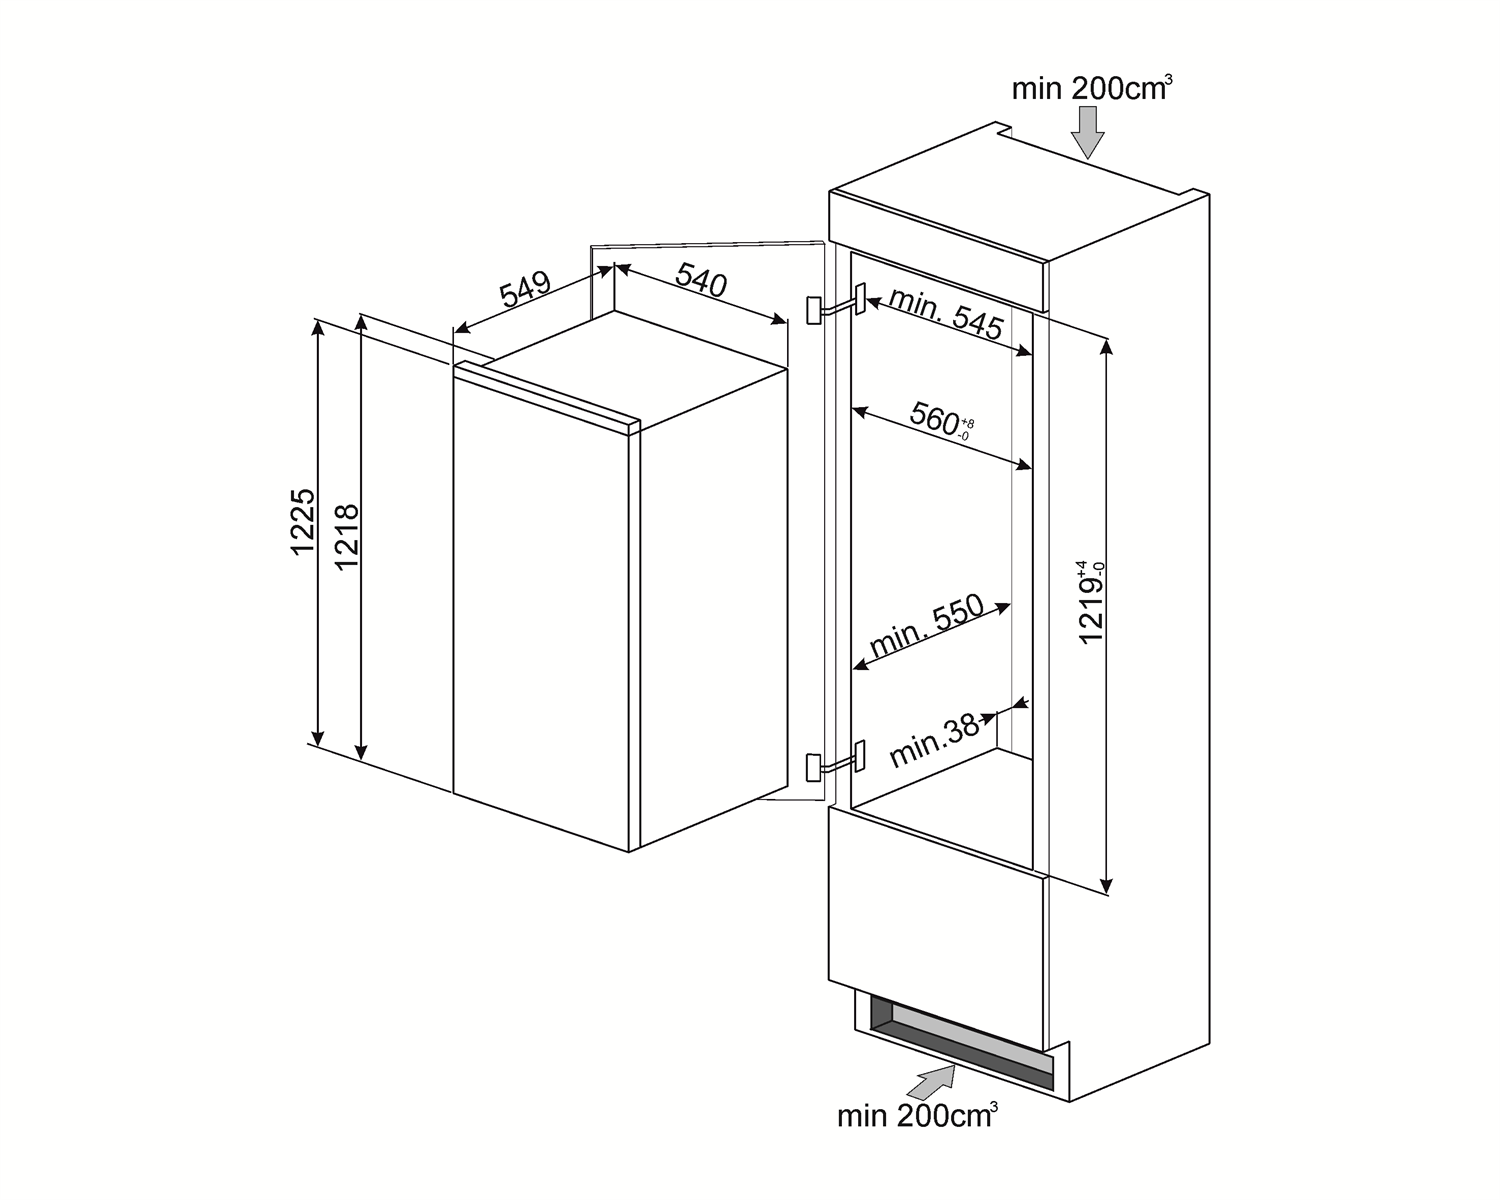 Maattekening SMEG koelkast inbouw S7192CS2P1